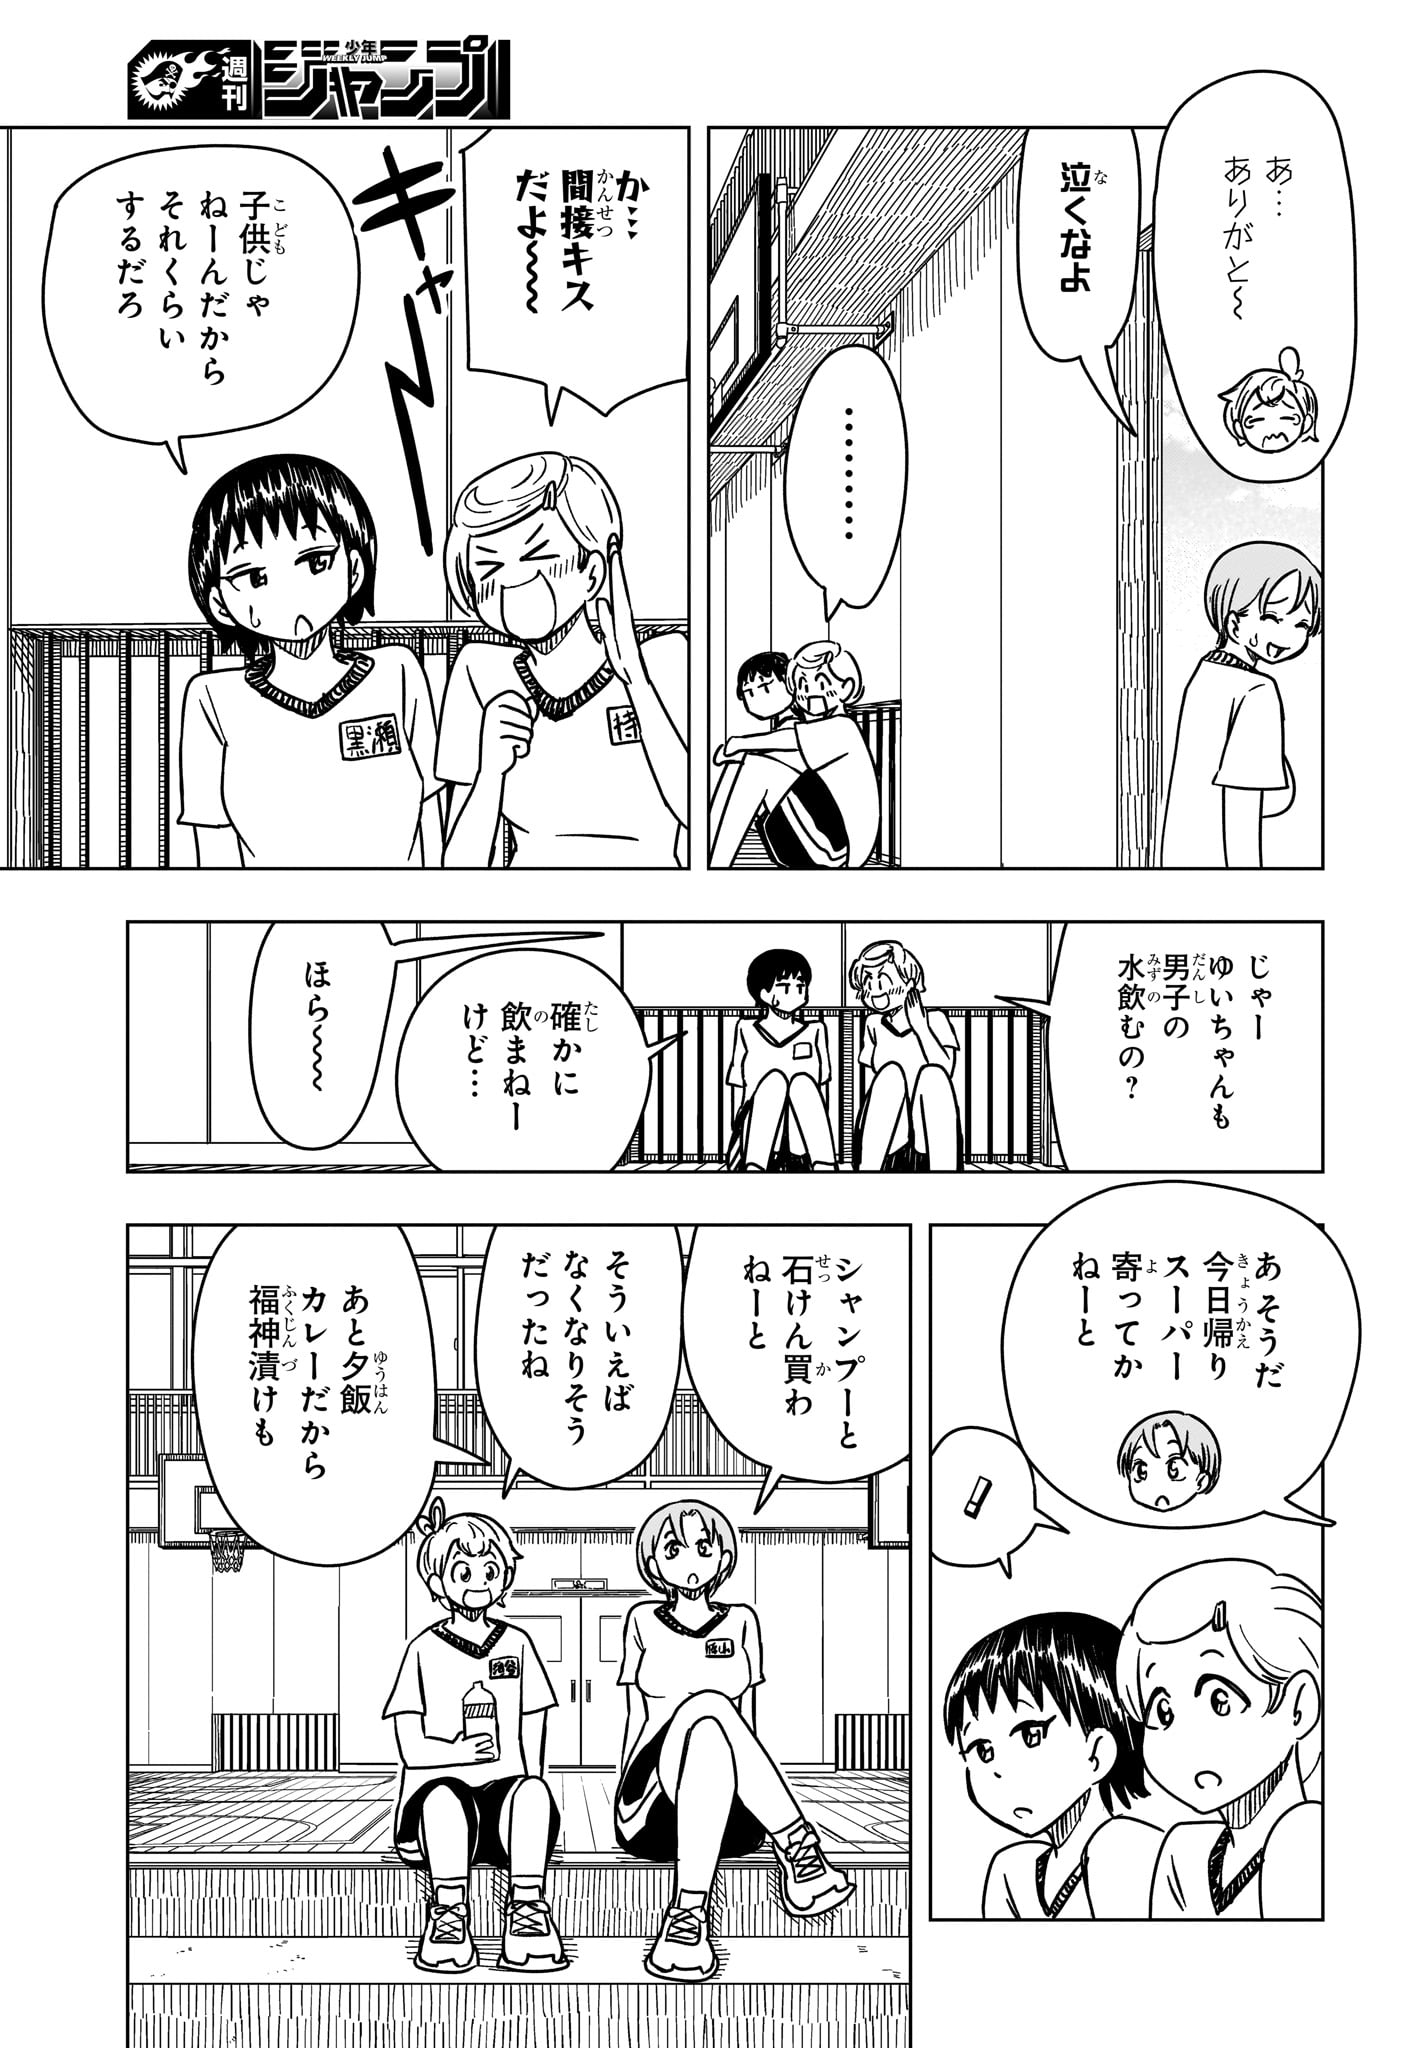 Saikuru Biyori - Chapter 11 - Page 9